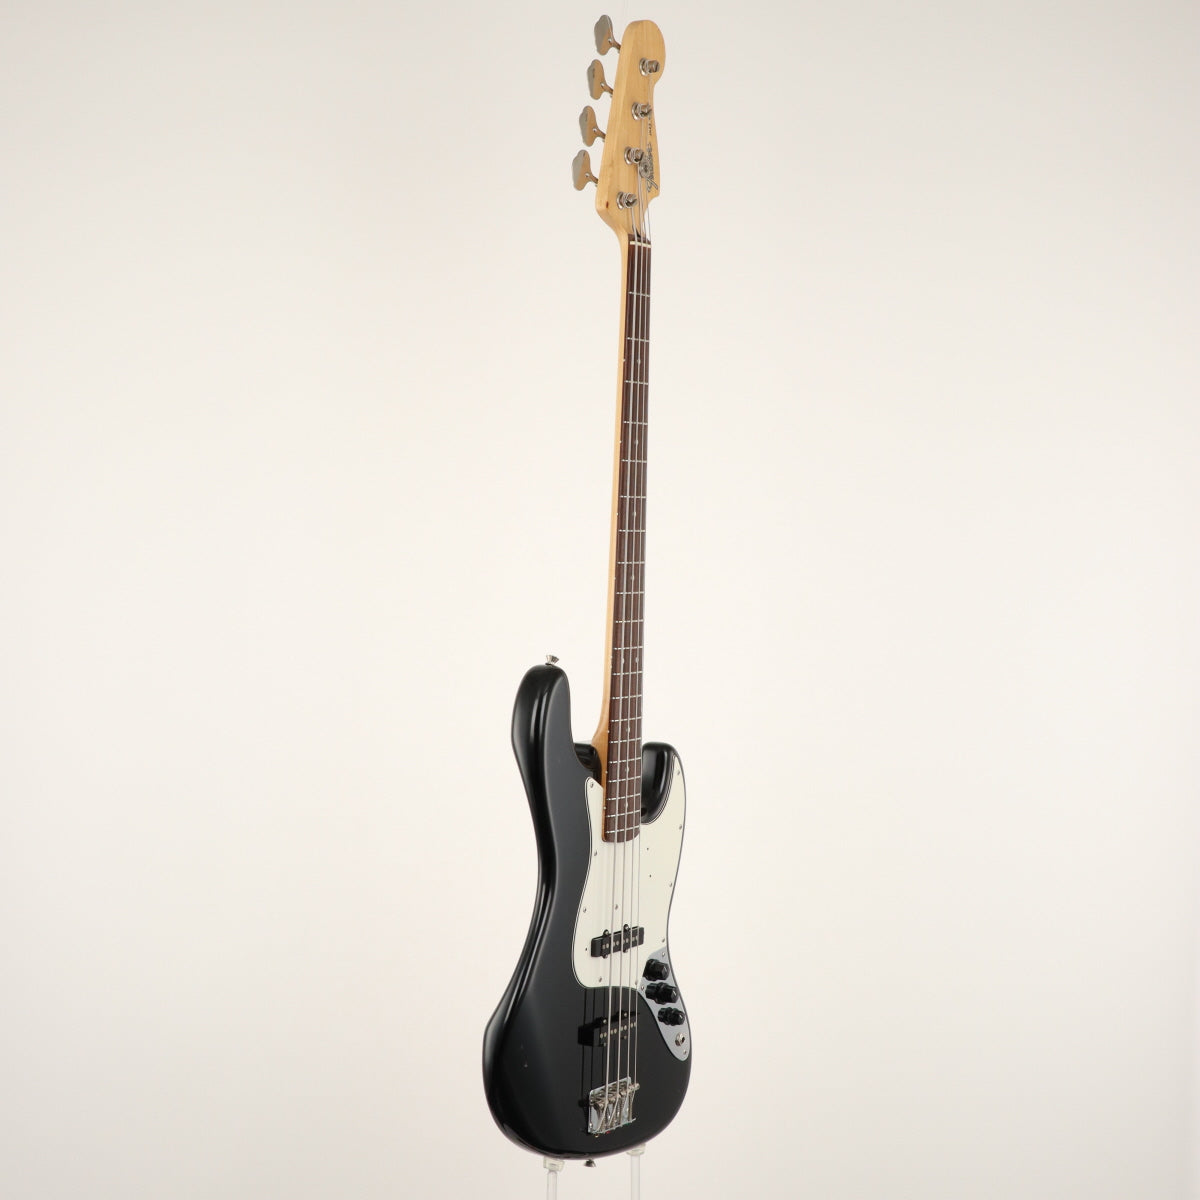 [SN Q073857] USED Fender Japan / JB-45 Black [11]